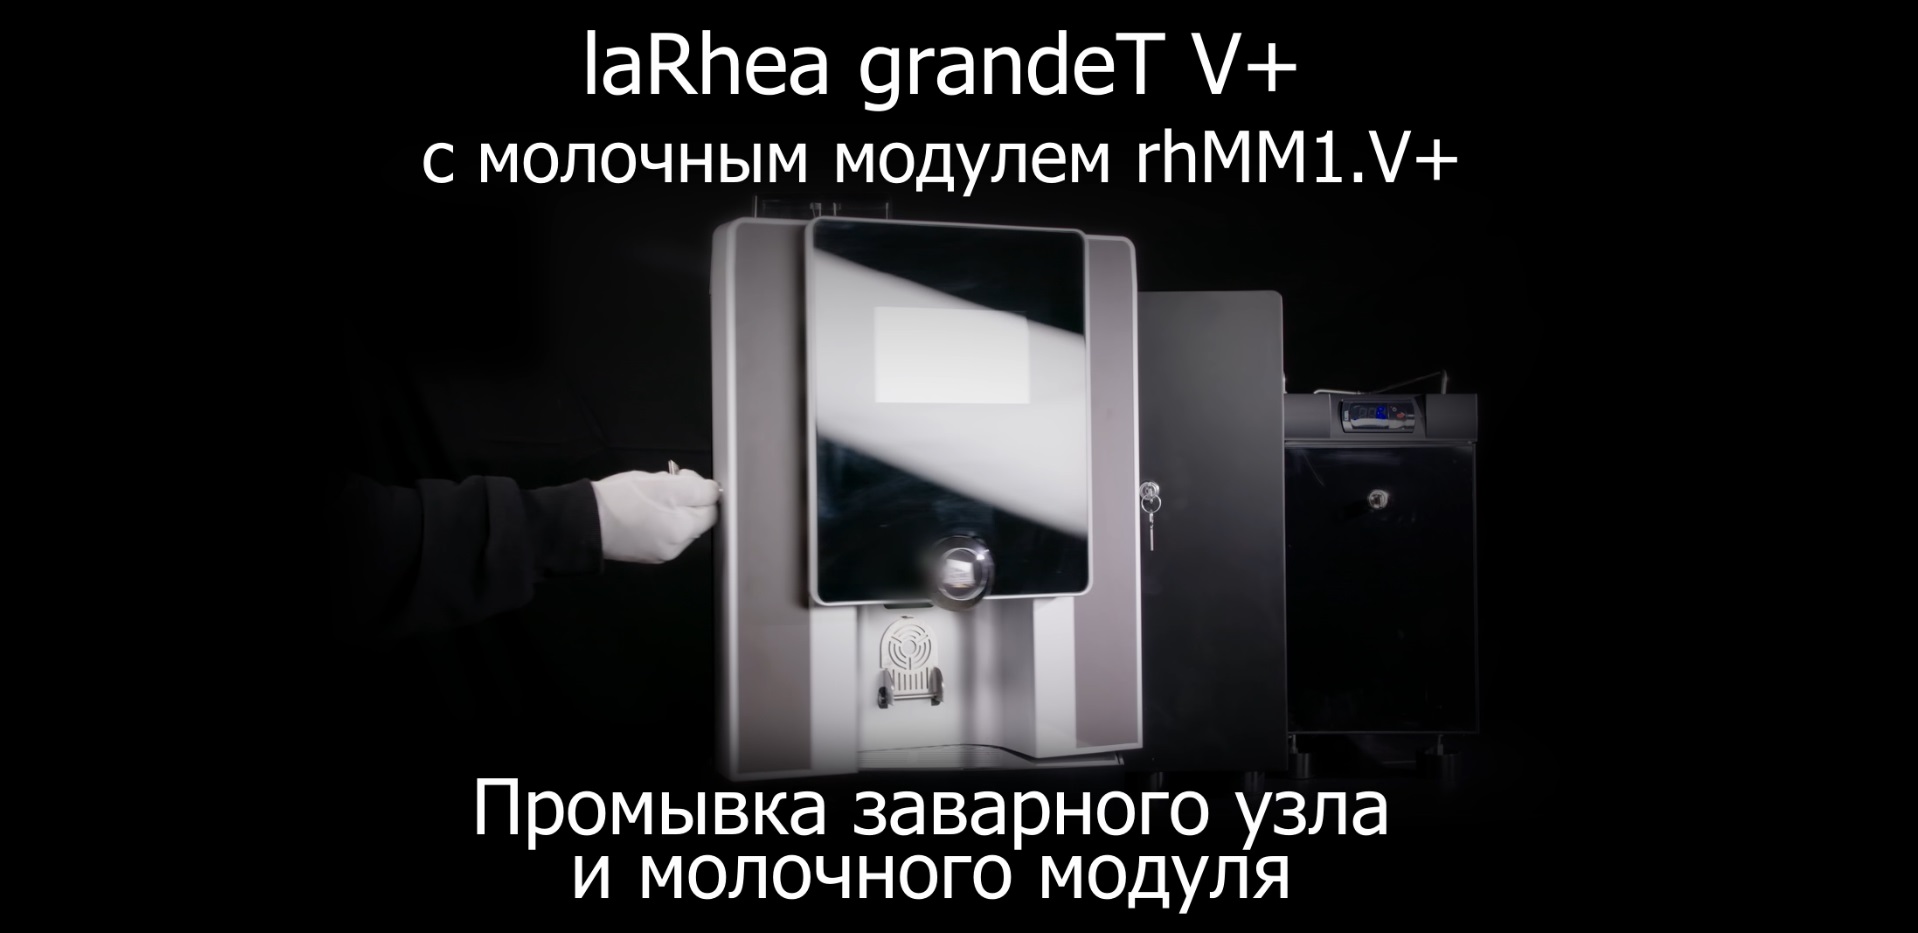 Ежедневная промывка заварного узла и молочного модуля кофемашины laRhea grandeT V+